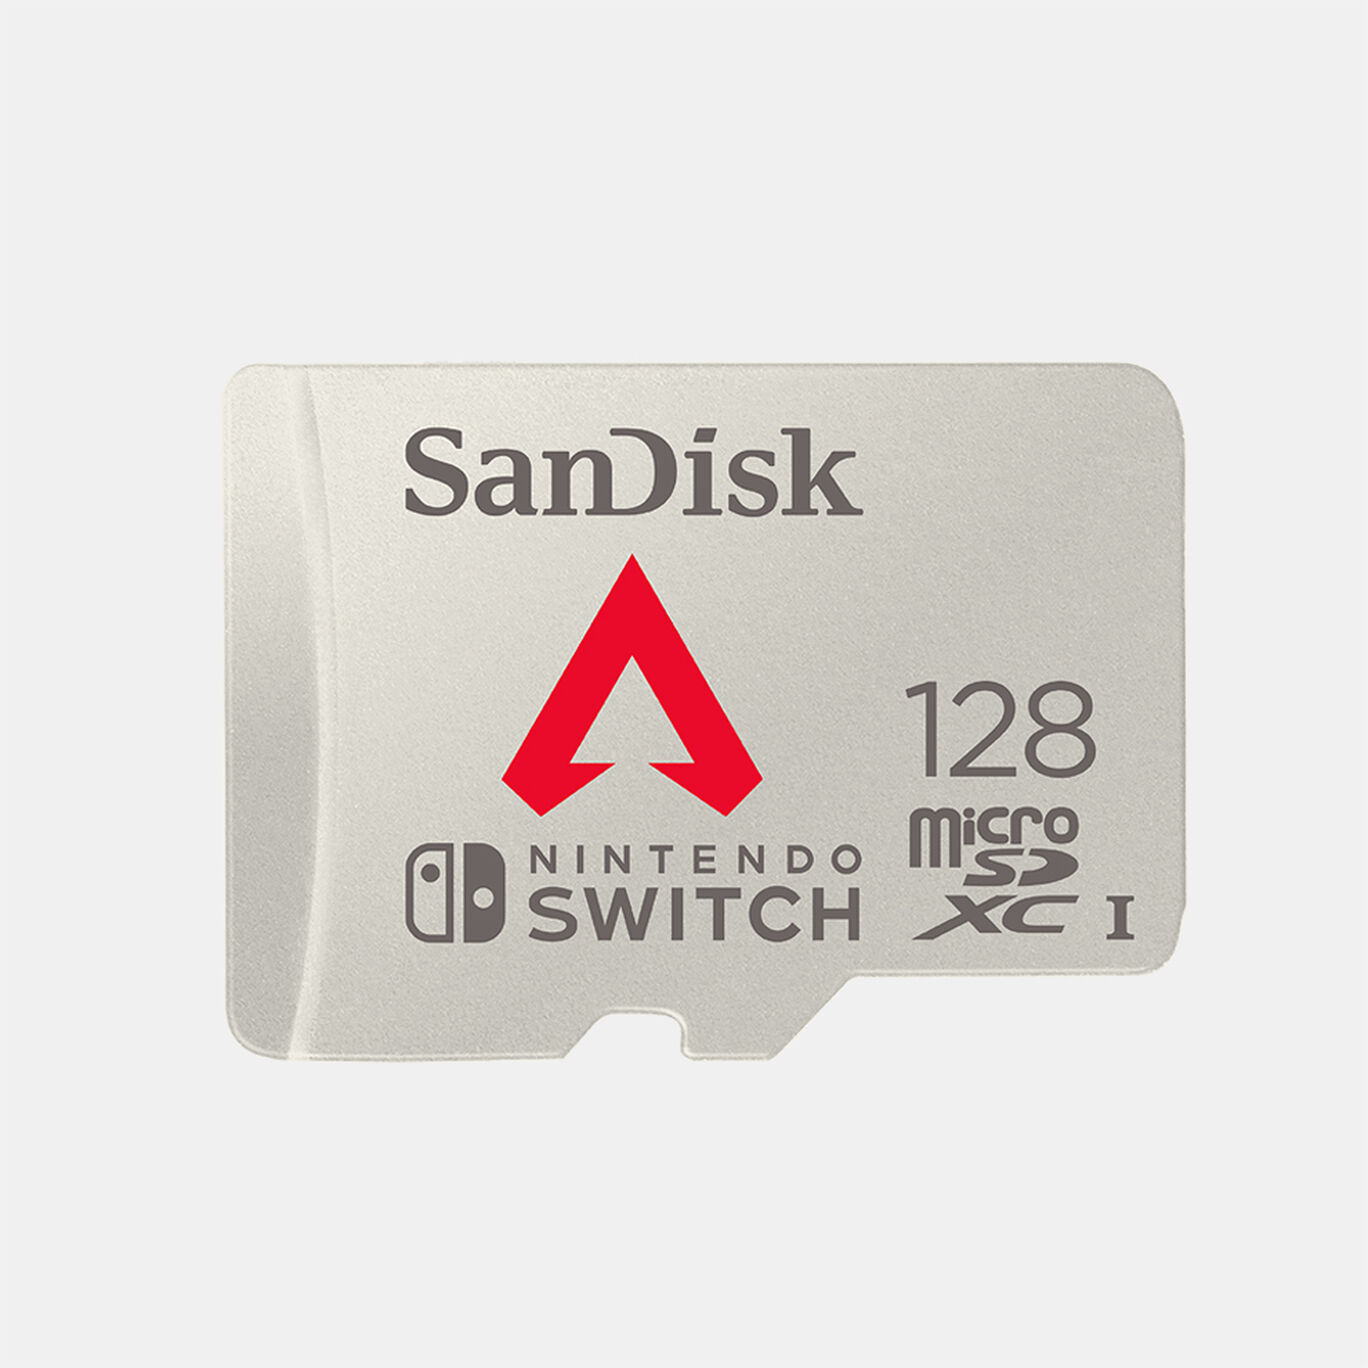 サンディスク Nintendo Switch™用 microSDカード 128GB Apex Legends